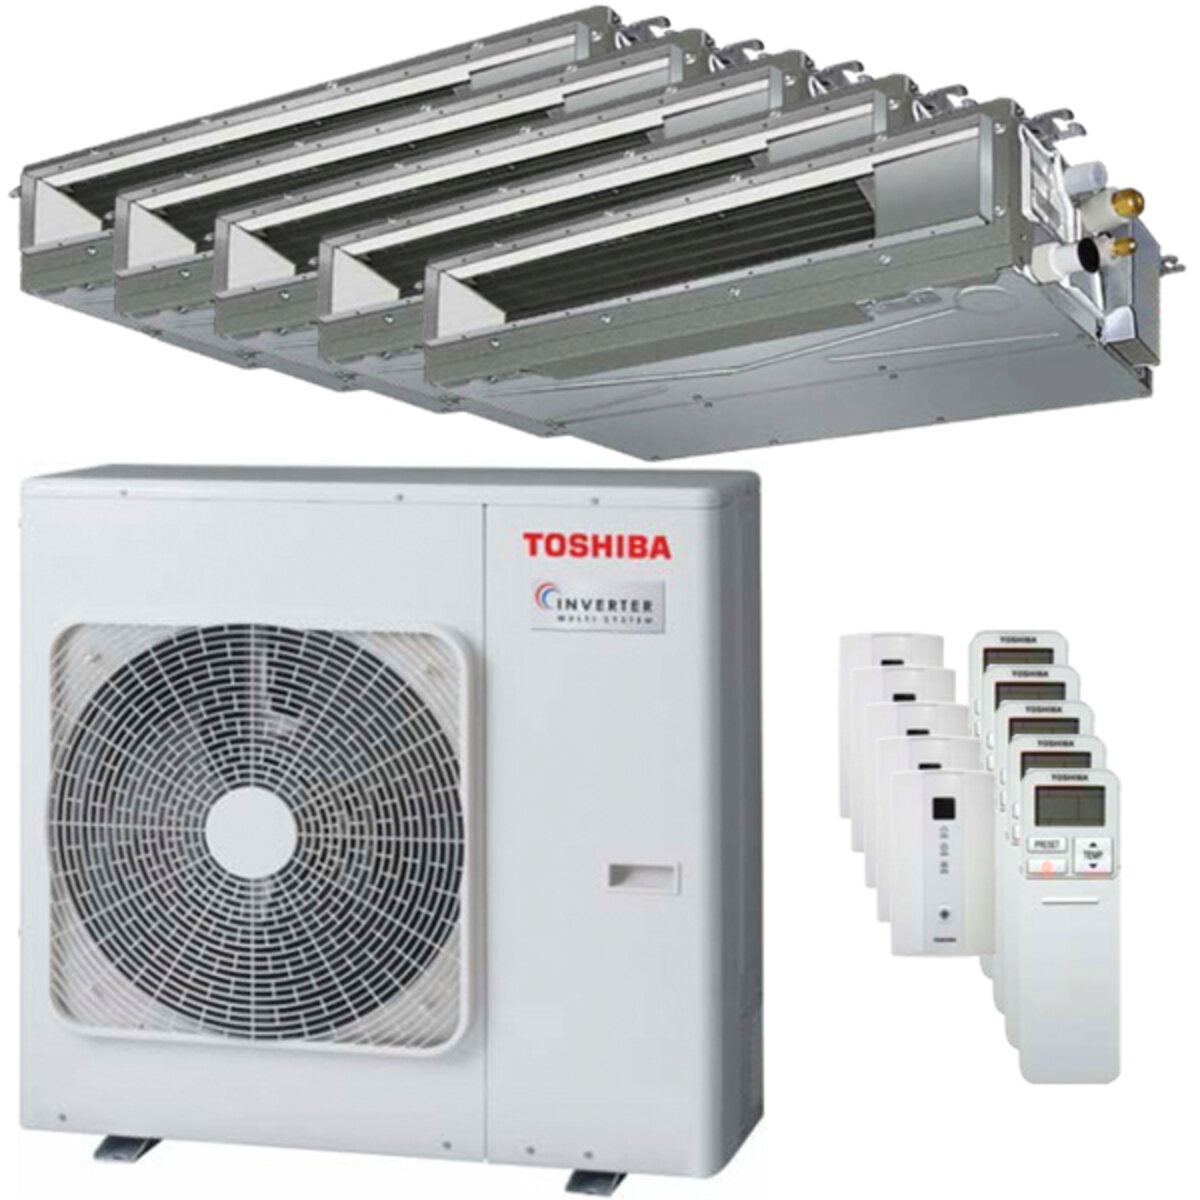 Toshiba Ductable Air Conditioner U2 penta split 7000 + 7000 + 9000 + 9000 + 12000 BTU inverter A++ unité extérieure 10,0 kW